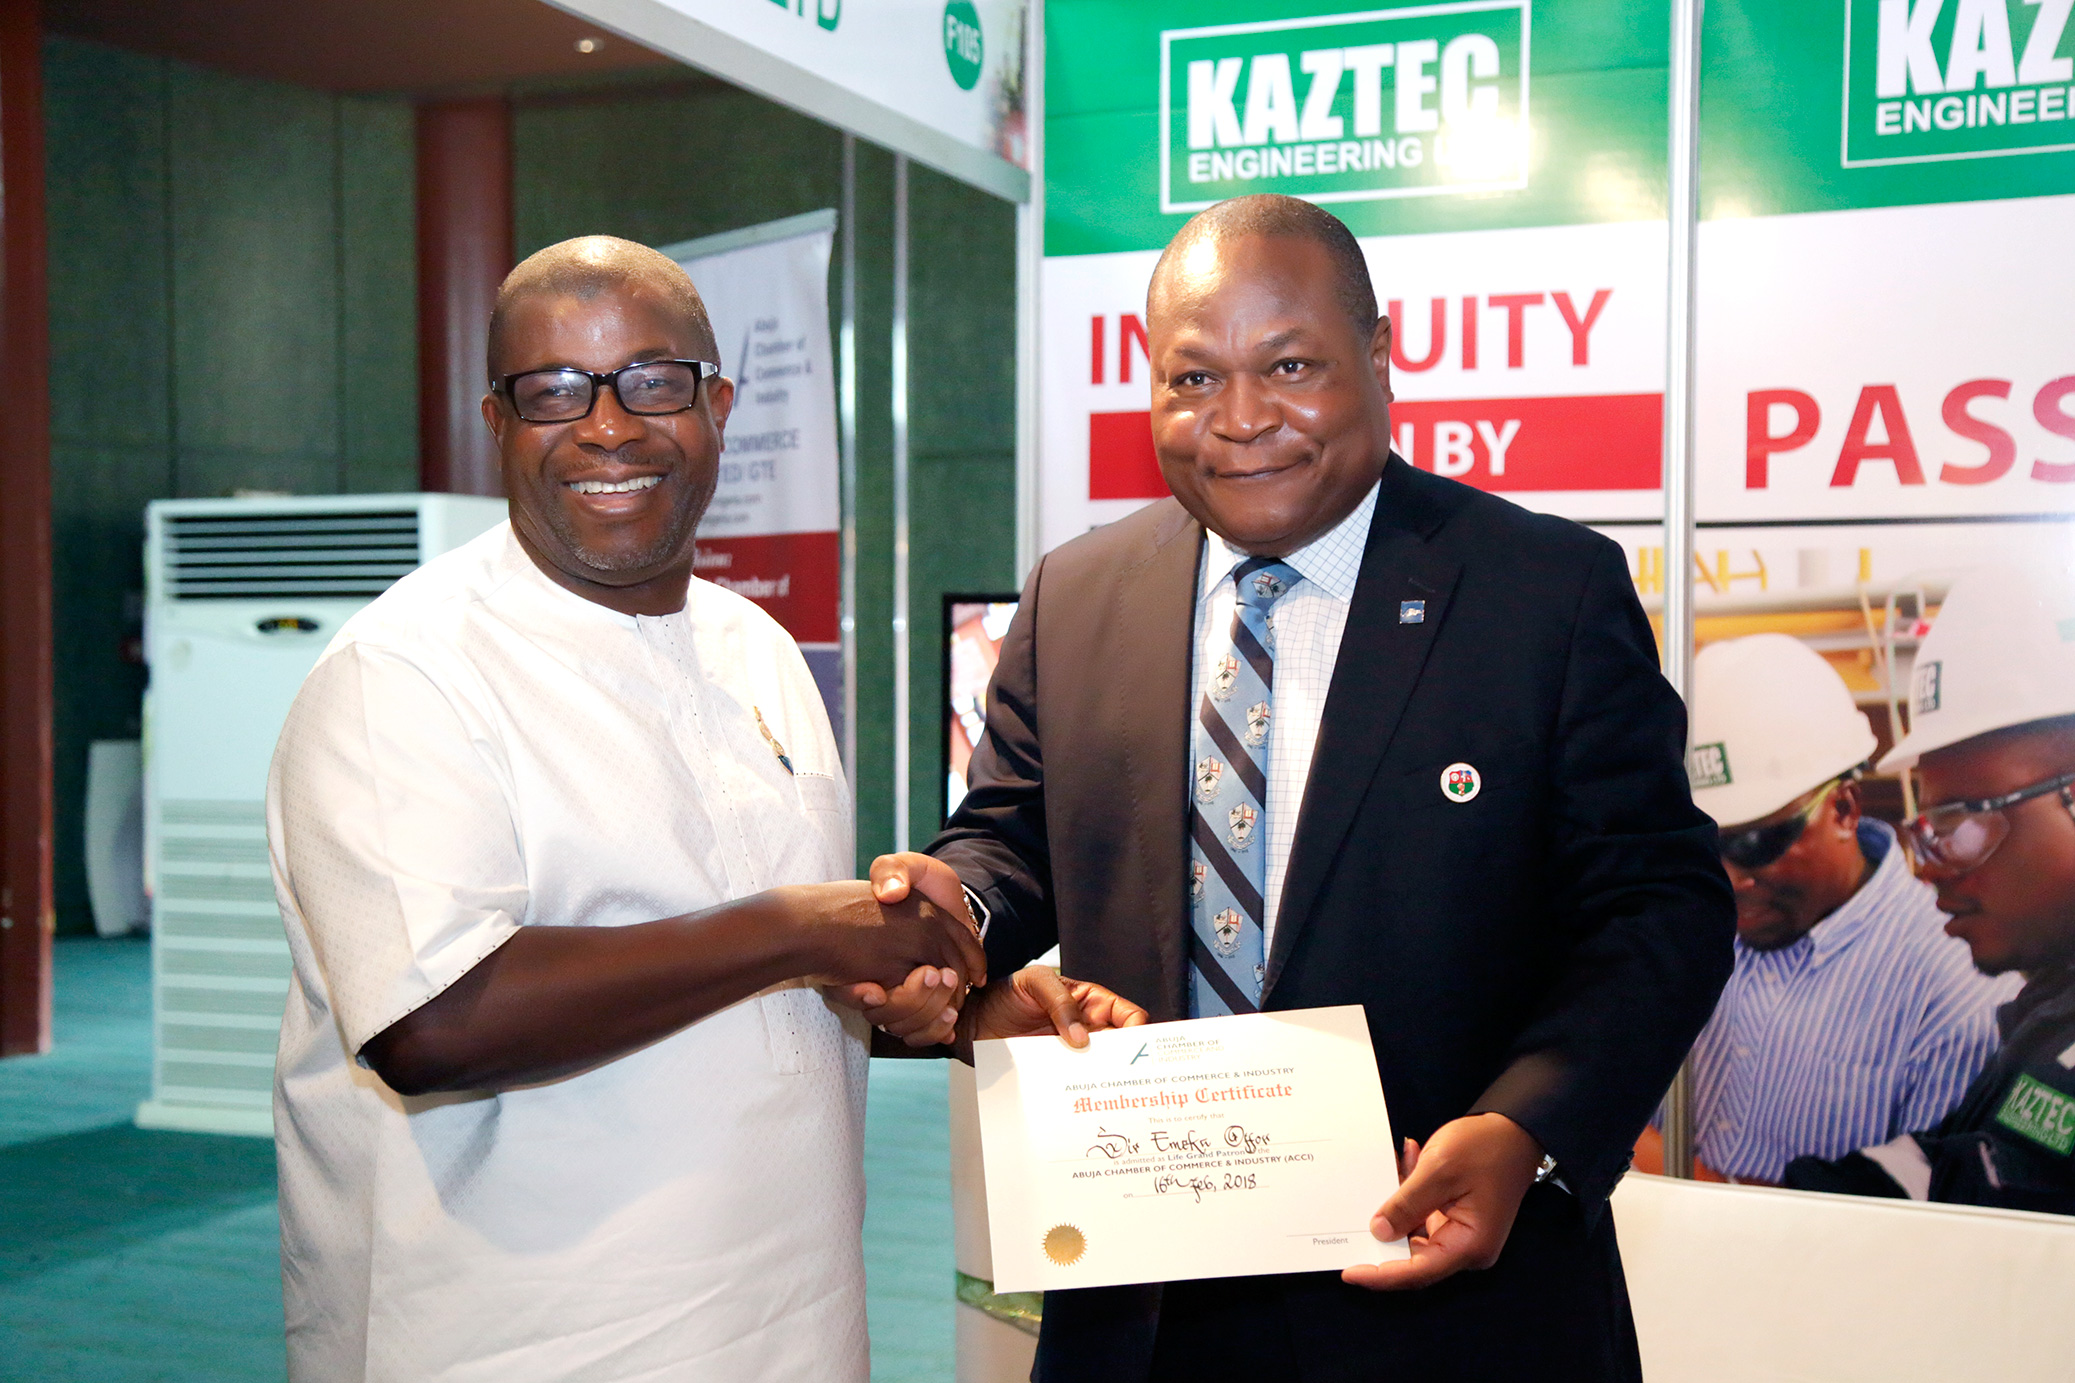 Kaztec Engineering Ltd. at the Nigeria International Petroleum Summit(NIPS) in Abuja